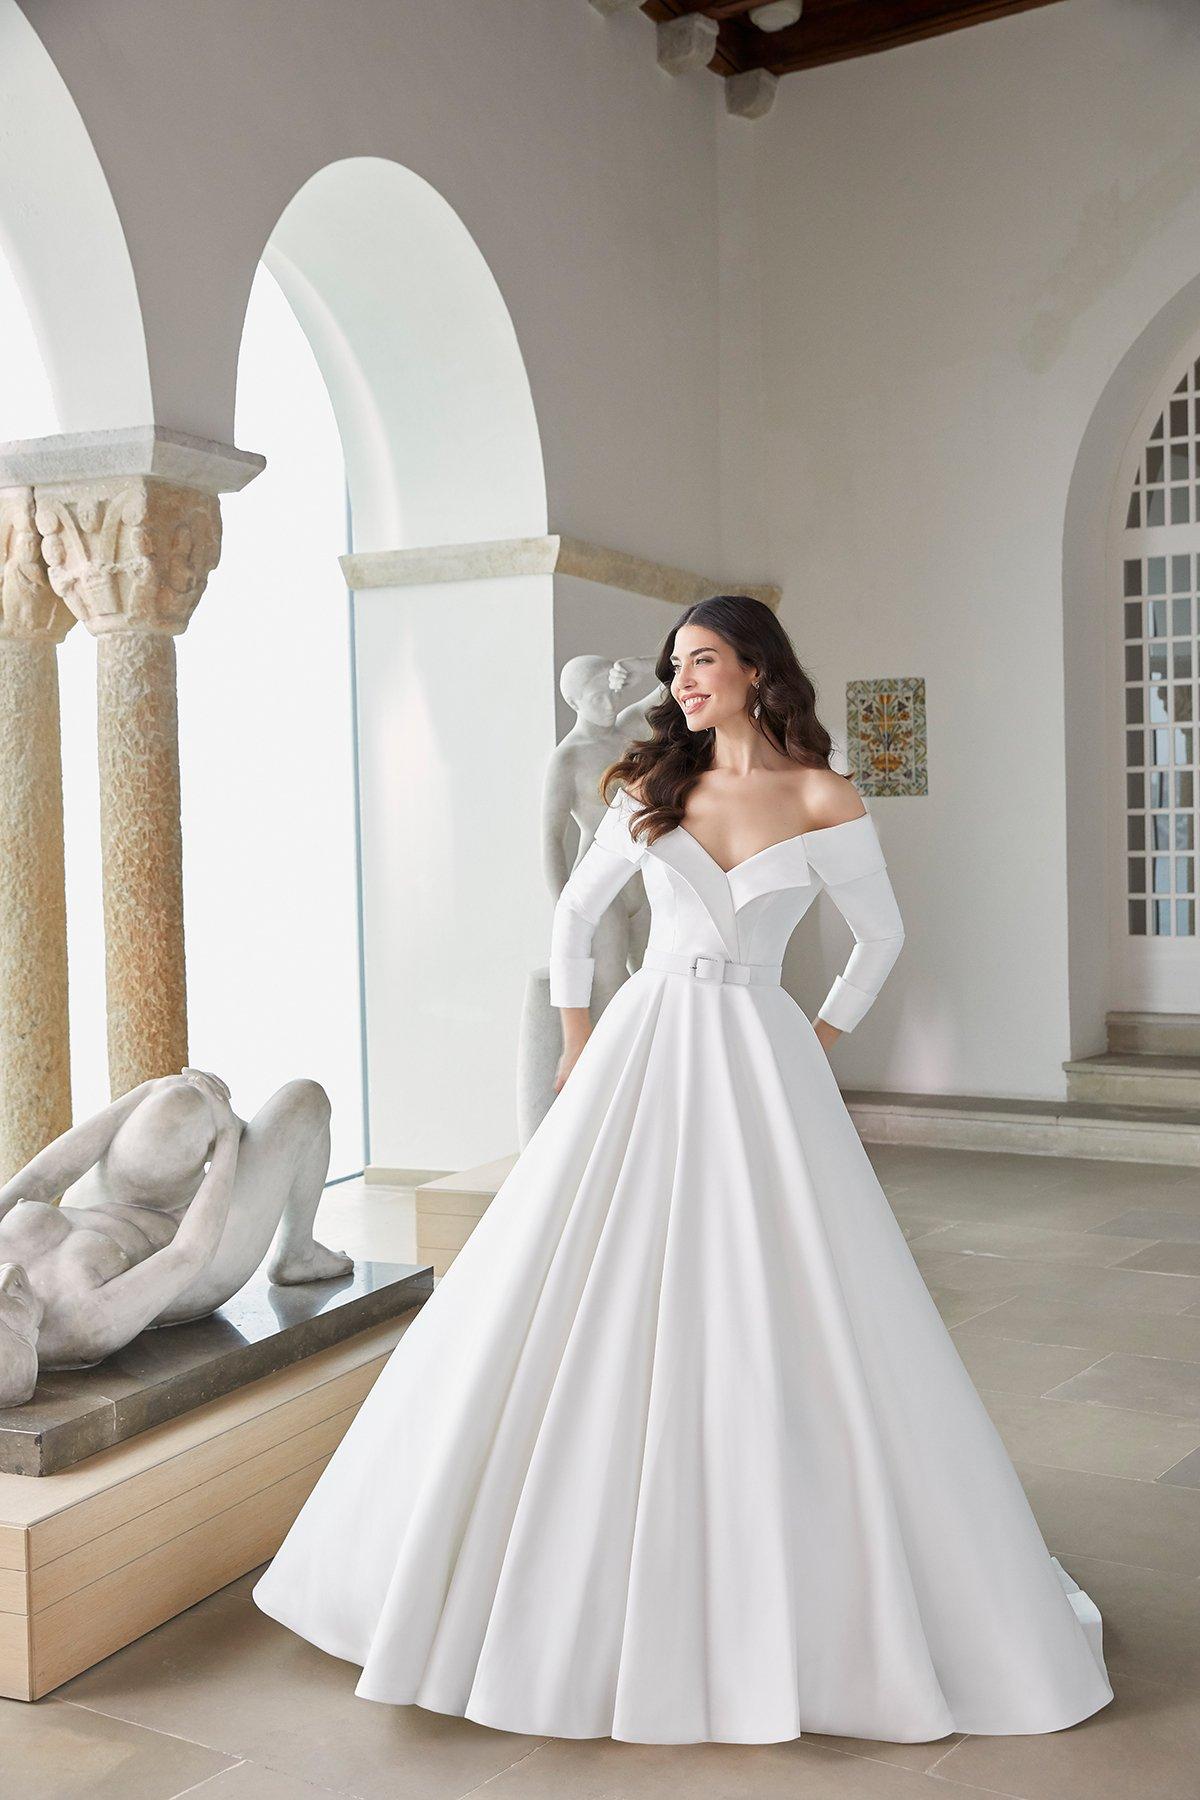 Ejecutante Remolque vestirse 100 vestidos de novia de corte princesa para tu boda